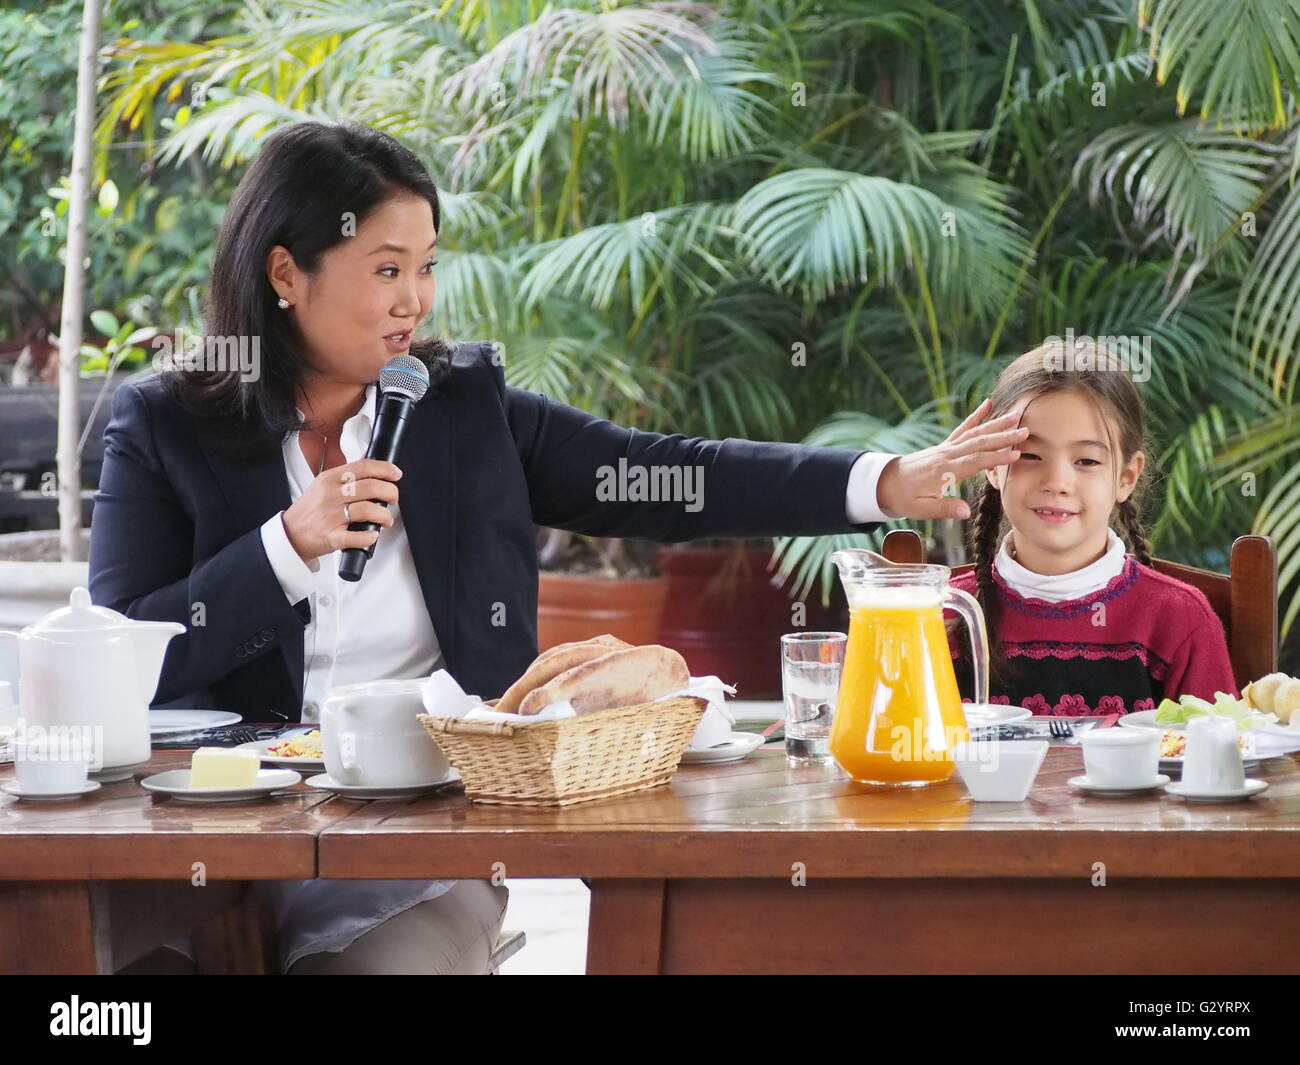 Lima, Giugno 5th, il candidato Keiko Fujimori ha avuto oggi, nel giorno delle elezioni, prima colazione con la sua famiglia e organi di stampa accreditati prima di dirigervi a gettare il suo voto. Foto Stock